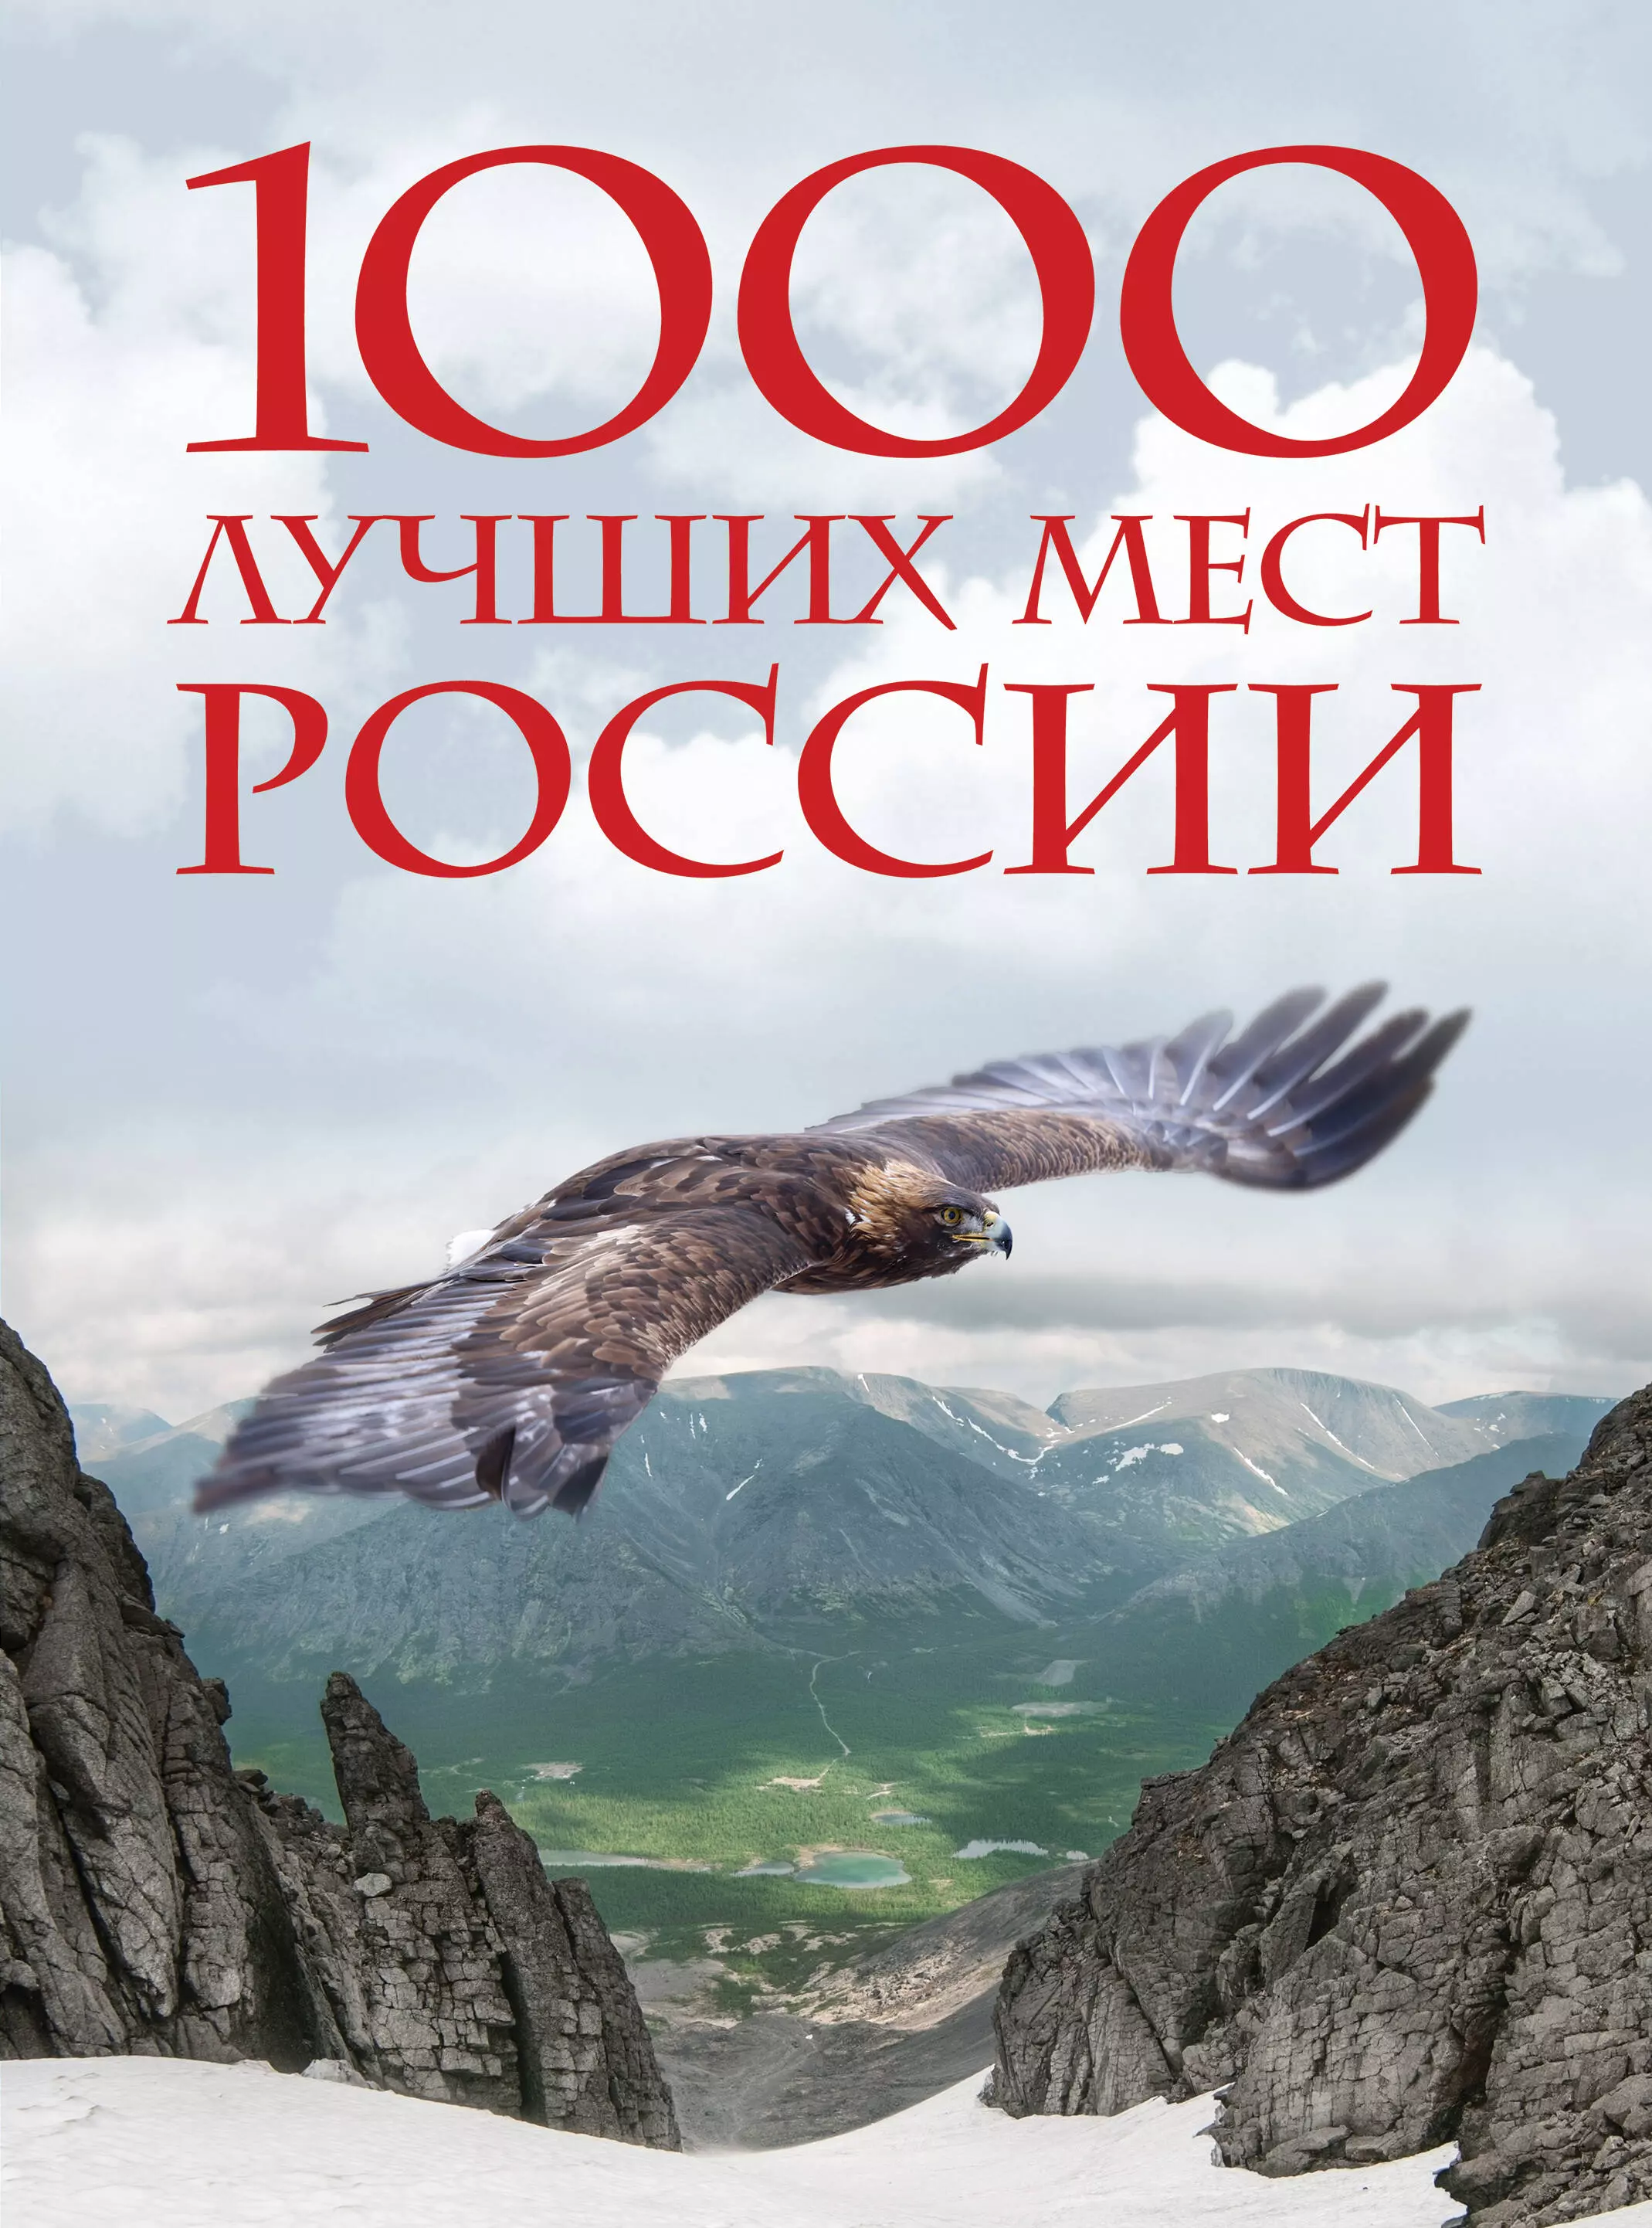  - 1000 лучших мест России, которые нужно увидеть за свою жизнь, 4-е издание (стерео-варио Орел)